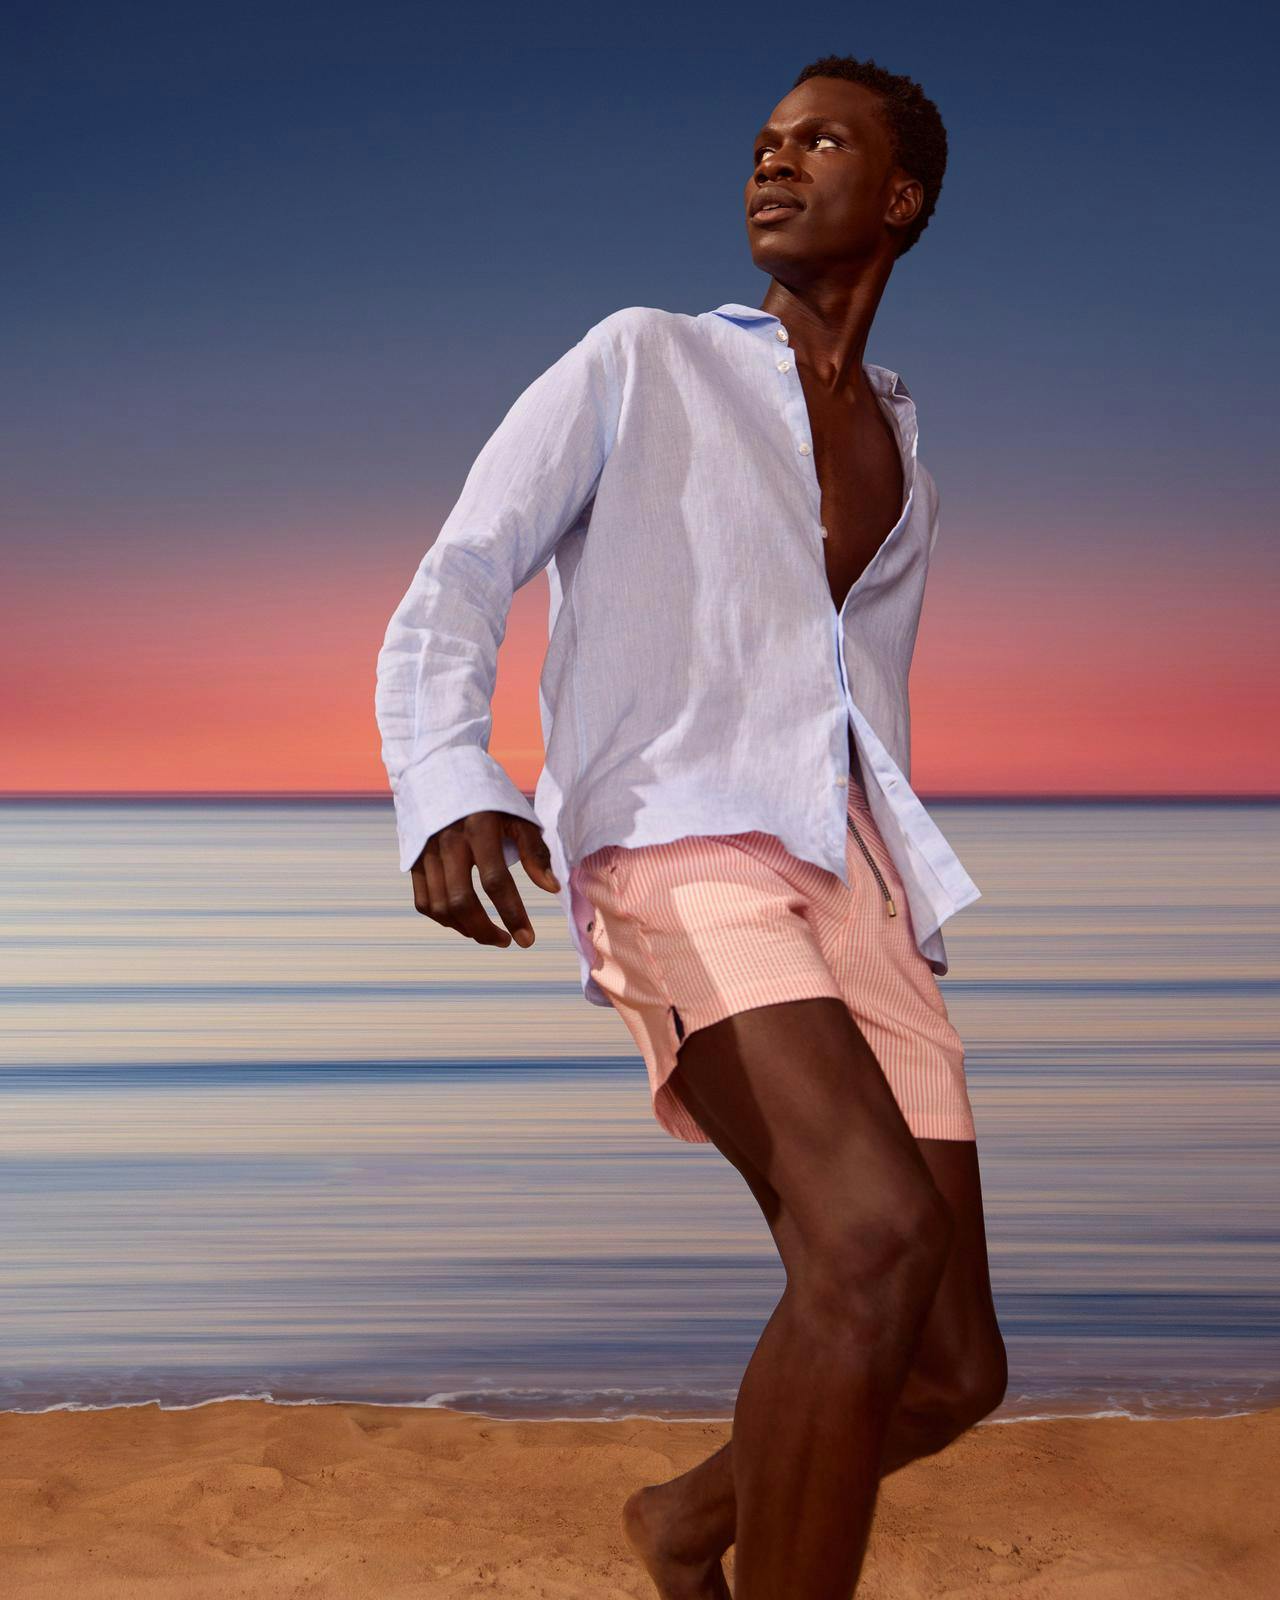 Un homme en chemise blanche et en shorts roses debout sur une plage.